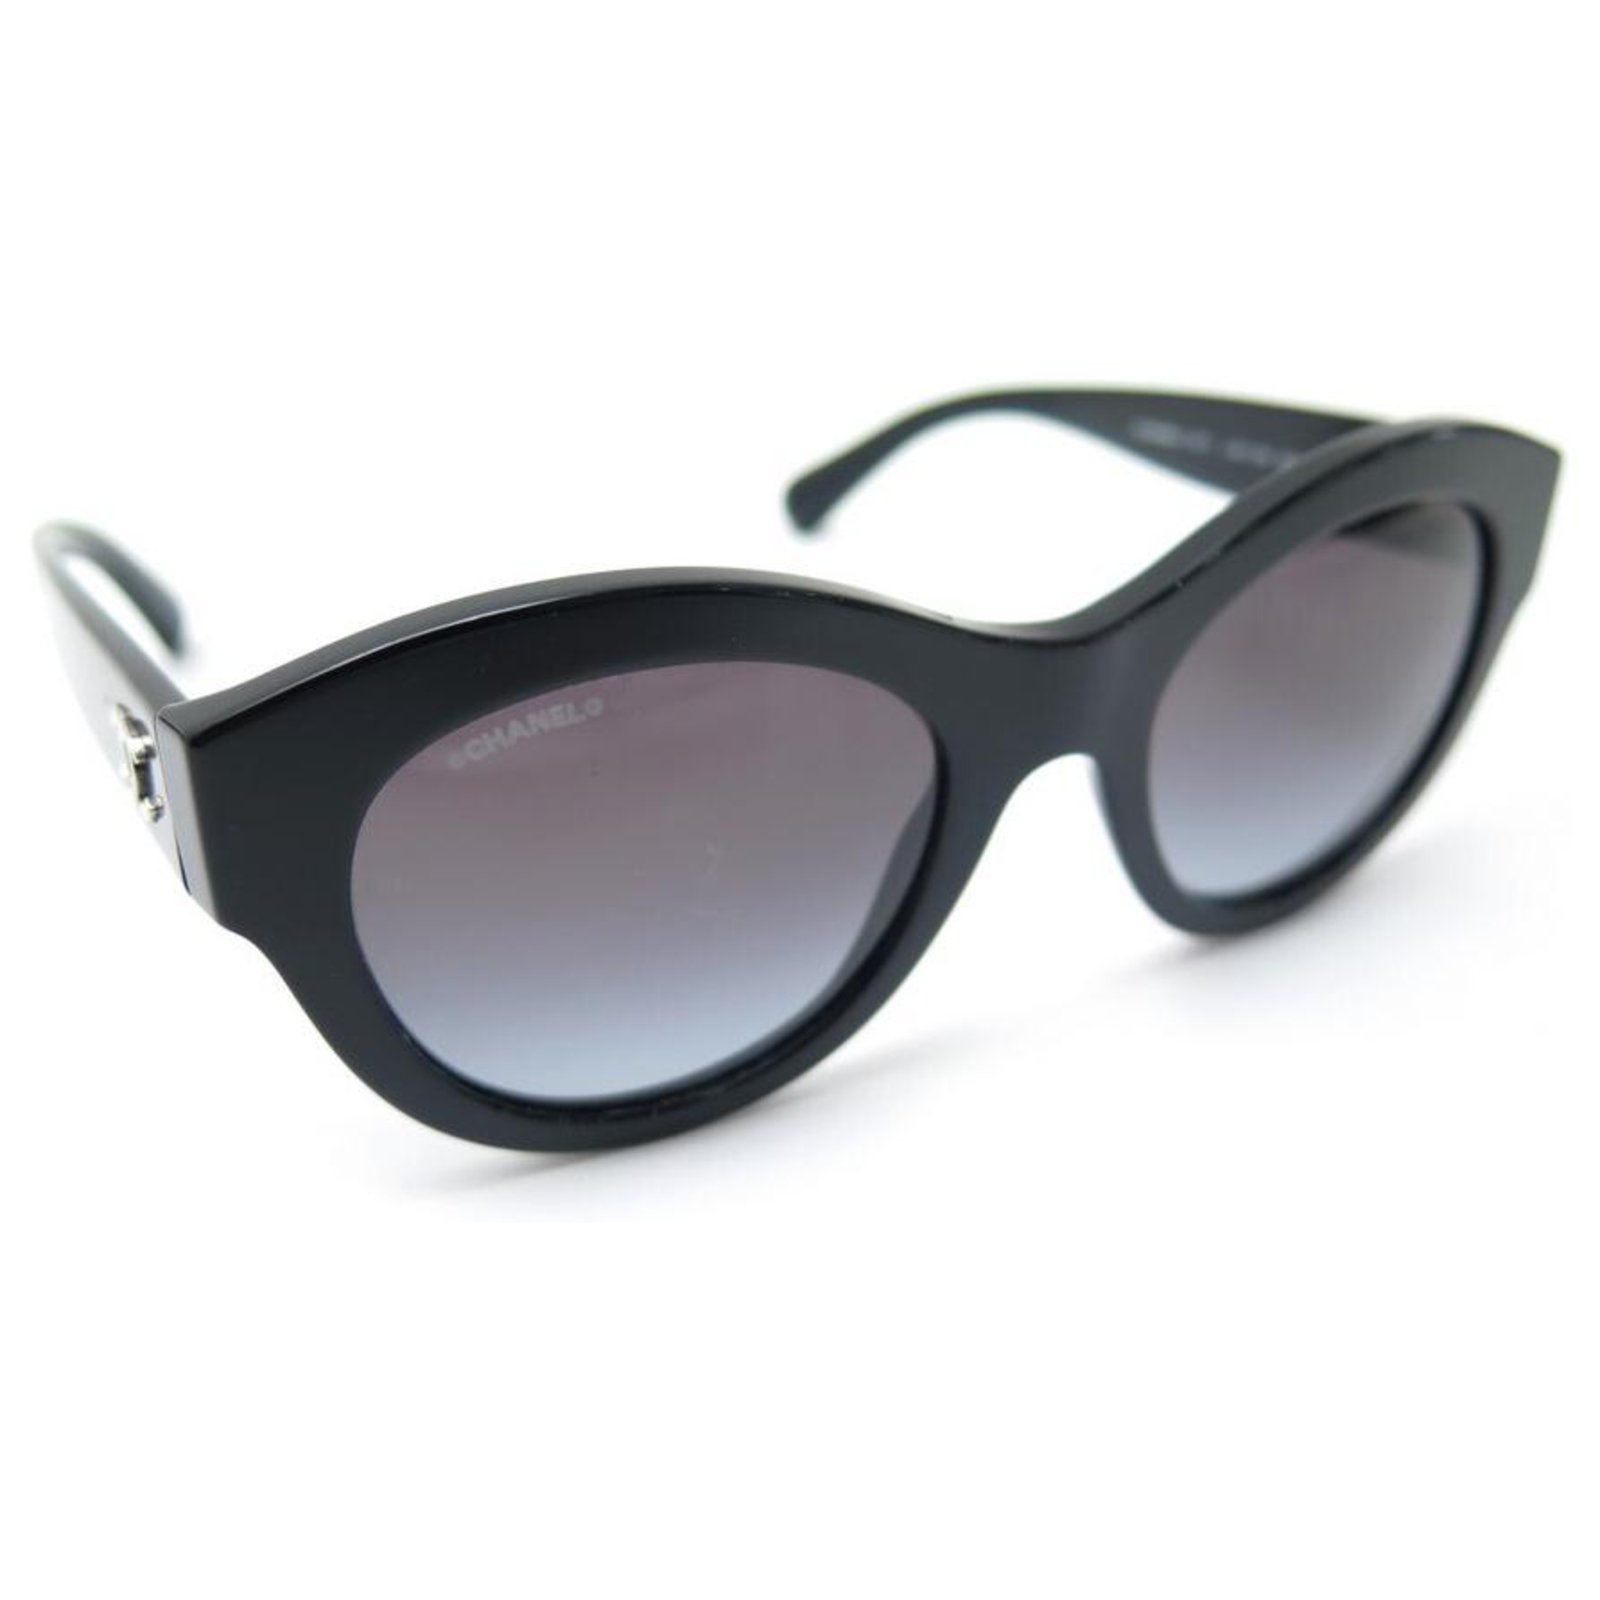 Chanel sunglasses 5371 CC LOGO IN BLACK RESIN + SUNGLASSES CASE